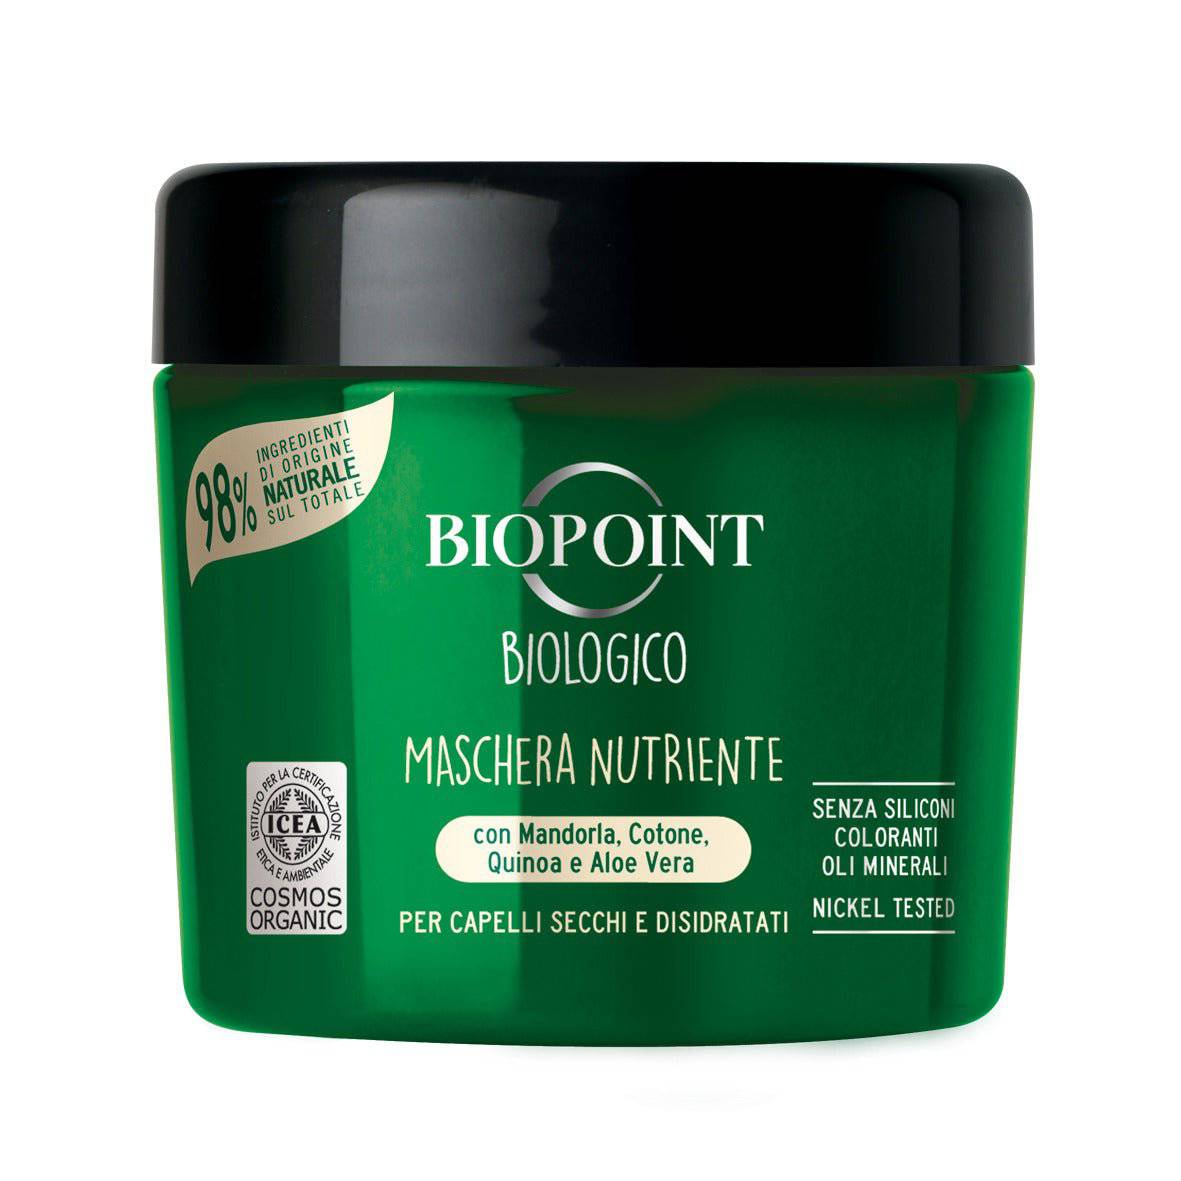 Biopoint Biologico Maschera Nutriente - Jasmine Parfums- [ean]